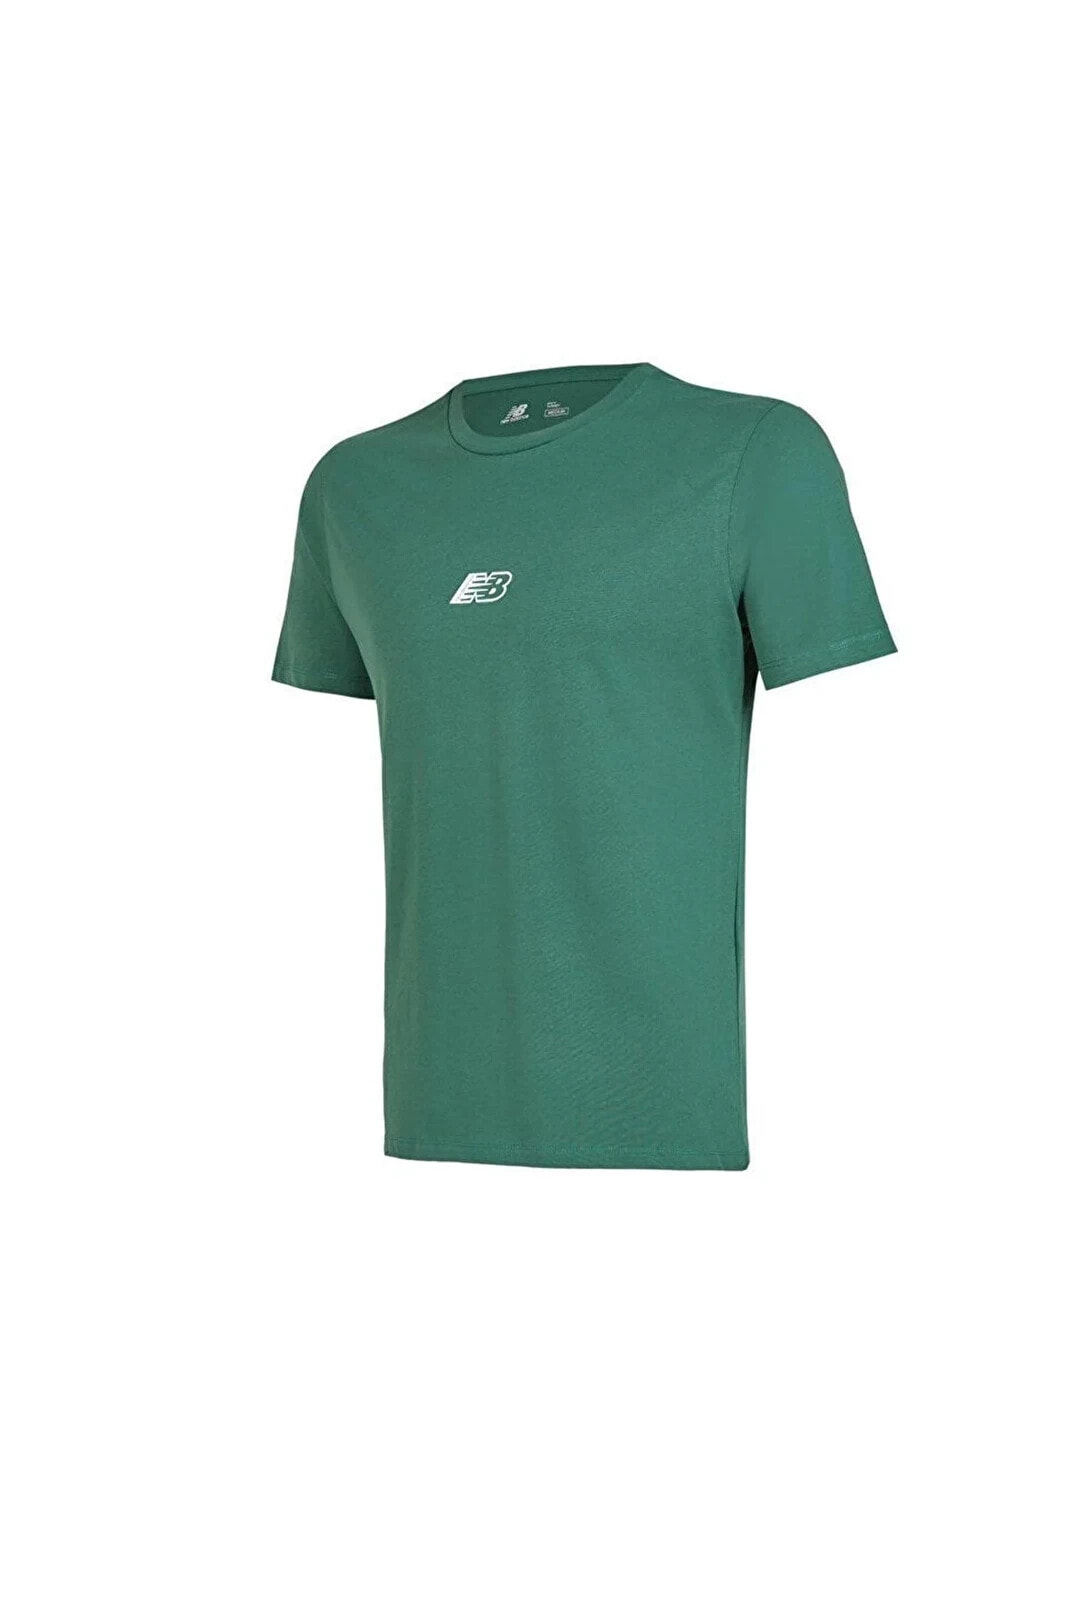 Erkek Yeşil T-shirt Mnt1347-grn